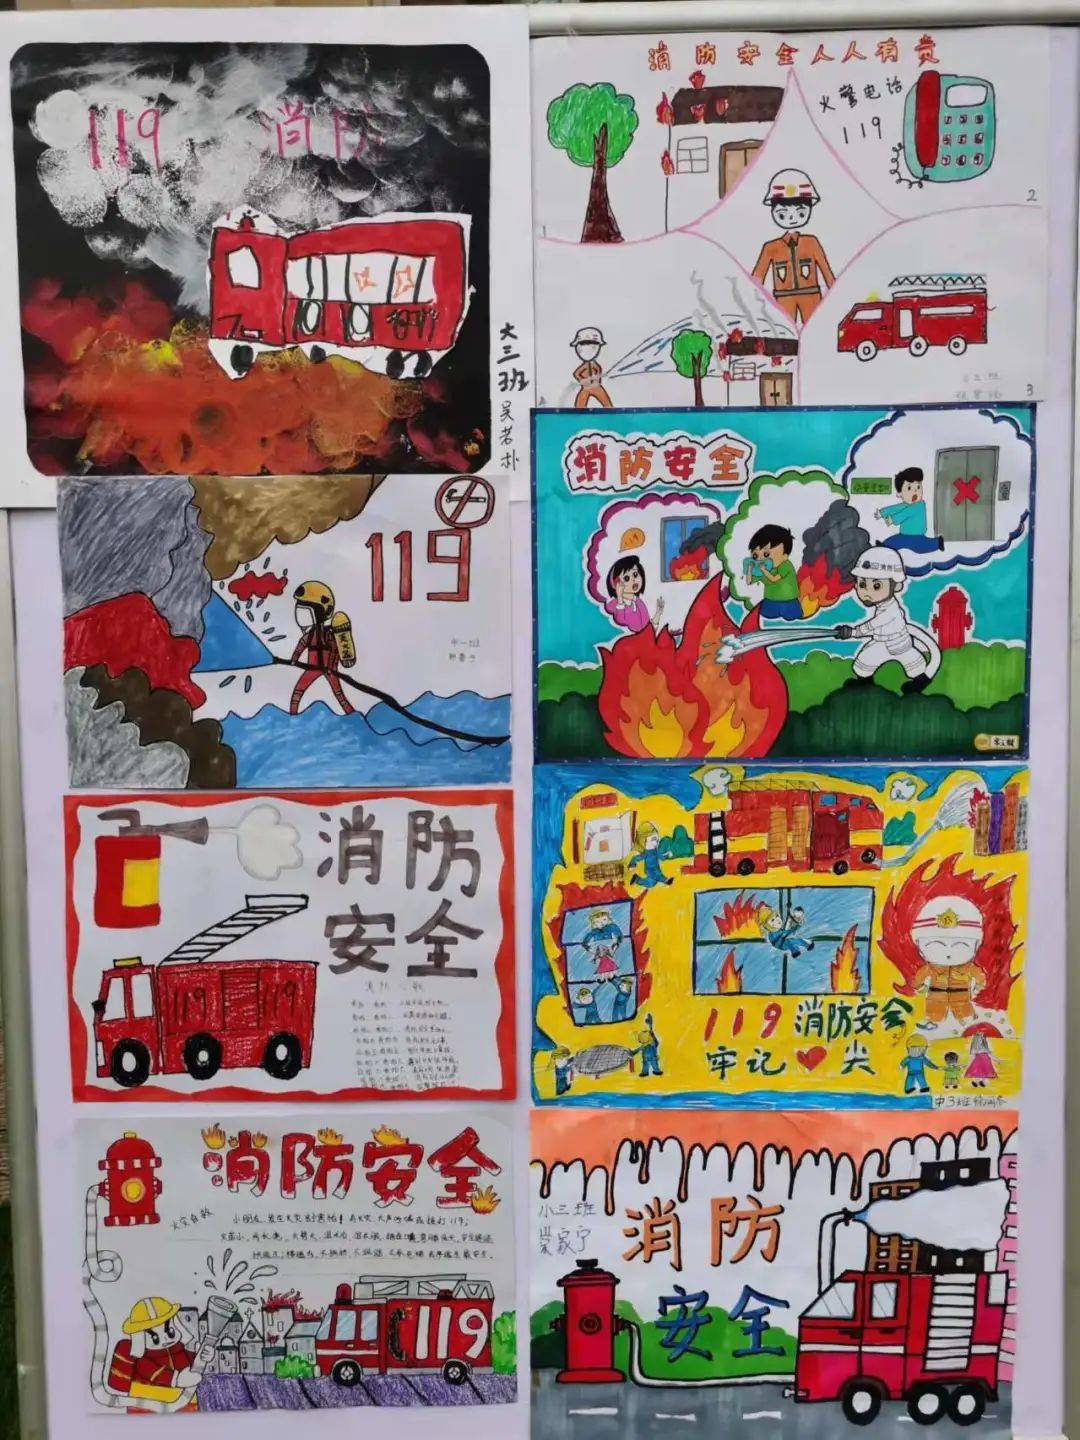 【少年强则国强⑧】港馨幼儿园开展"消防安全 牢记心间"消防安全系列